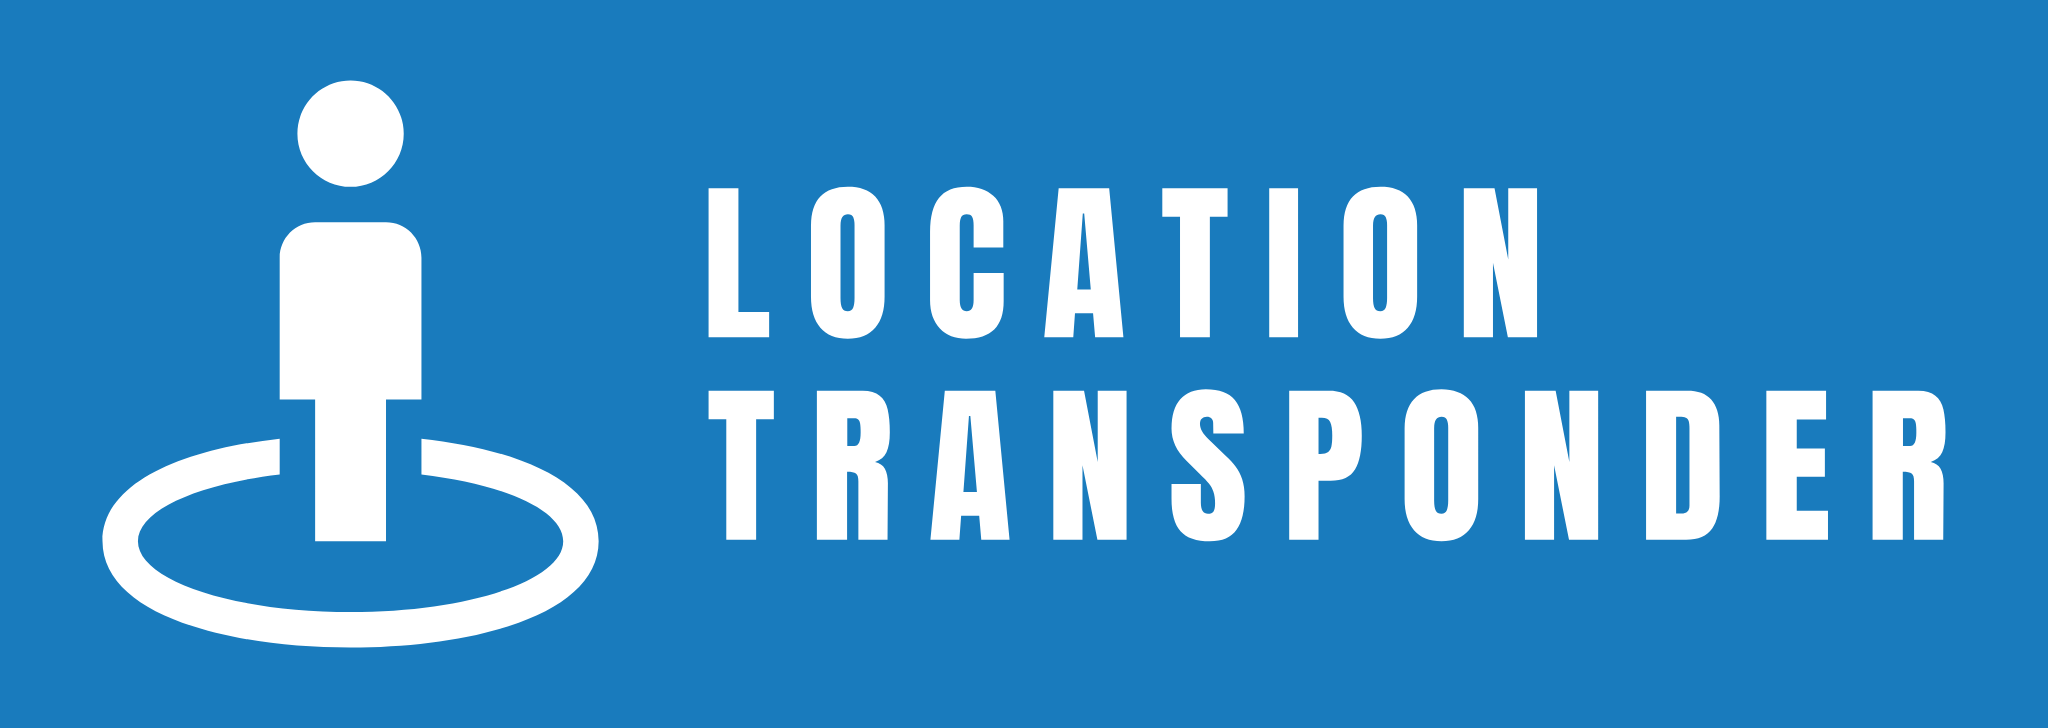 Location Transponder logo